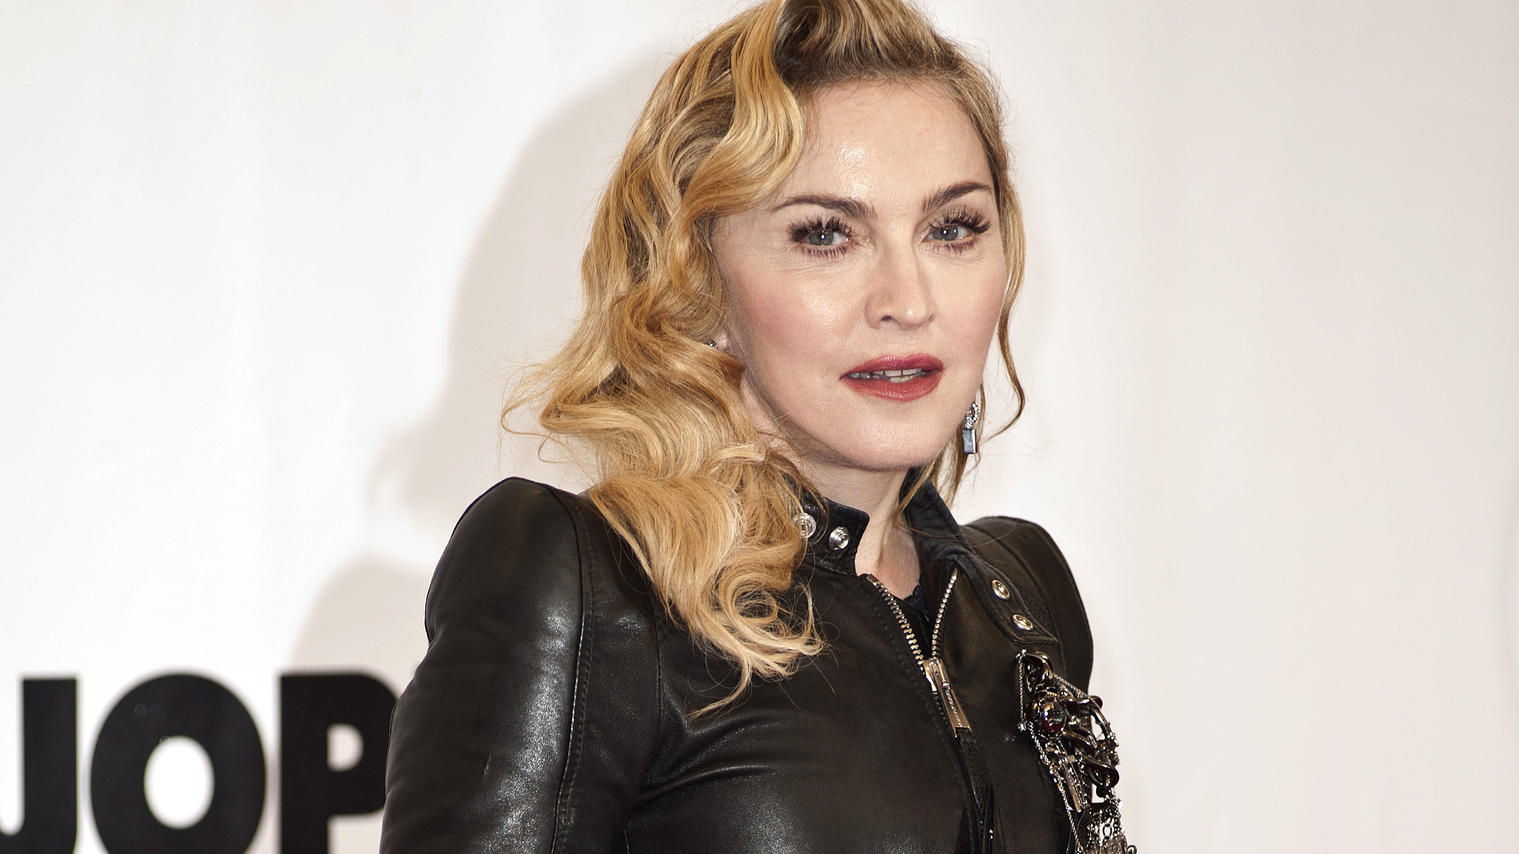 Ein Beitrag von US-Sängerin Madonna wurde auf dem sozialen Netzwerk Instagram kurzerhand gelöscht, weil es falsche Aussagen beinhaltete.